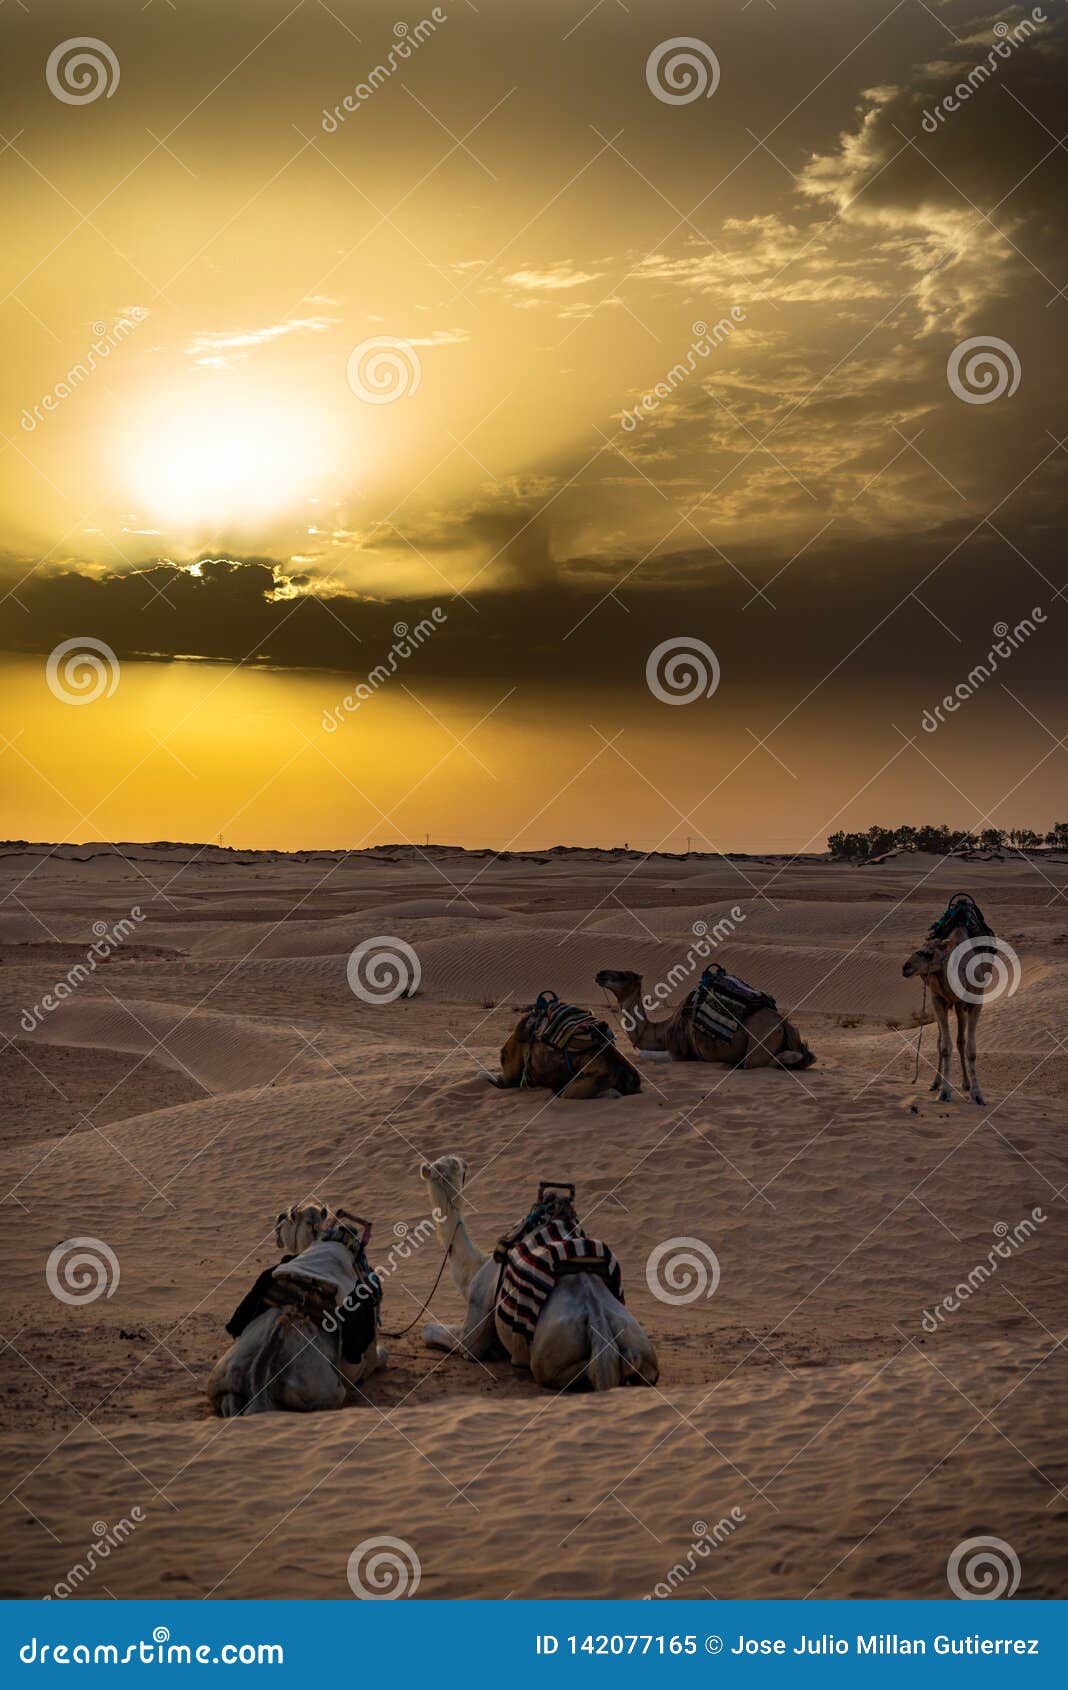 siluetas de camellos en el desierto del sahara